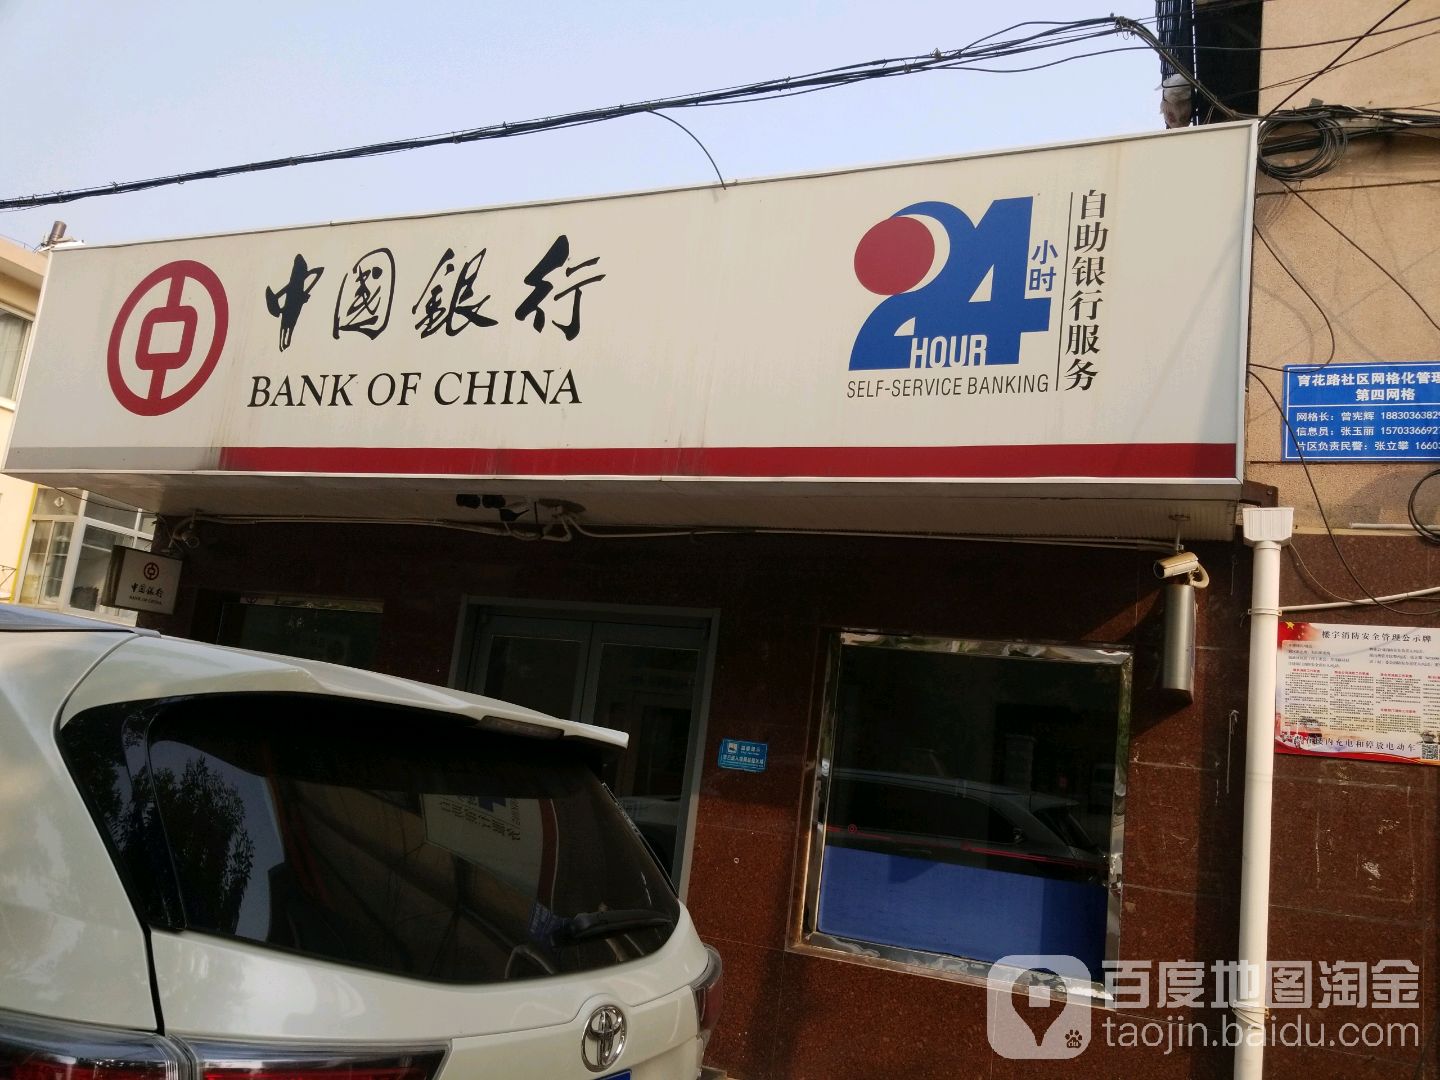 中國銀行24小時自助銀行(育花路店)